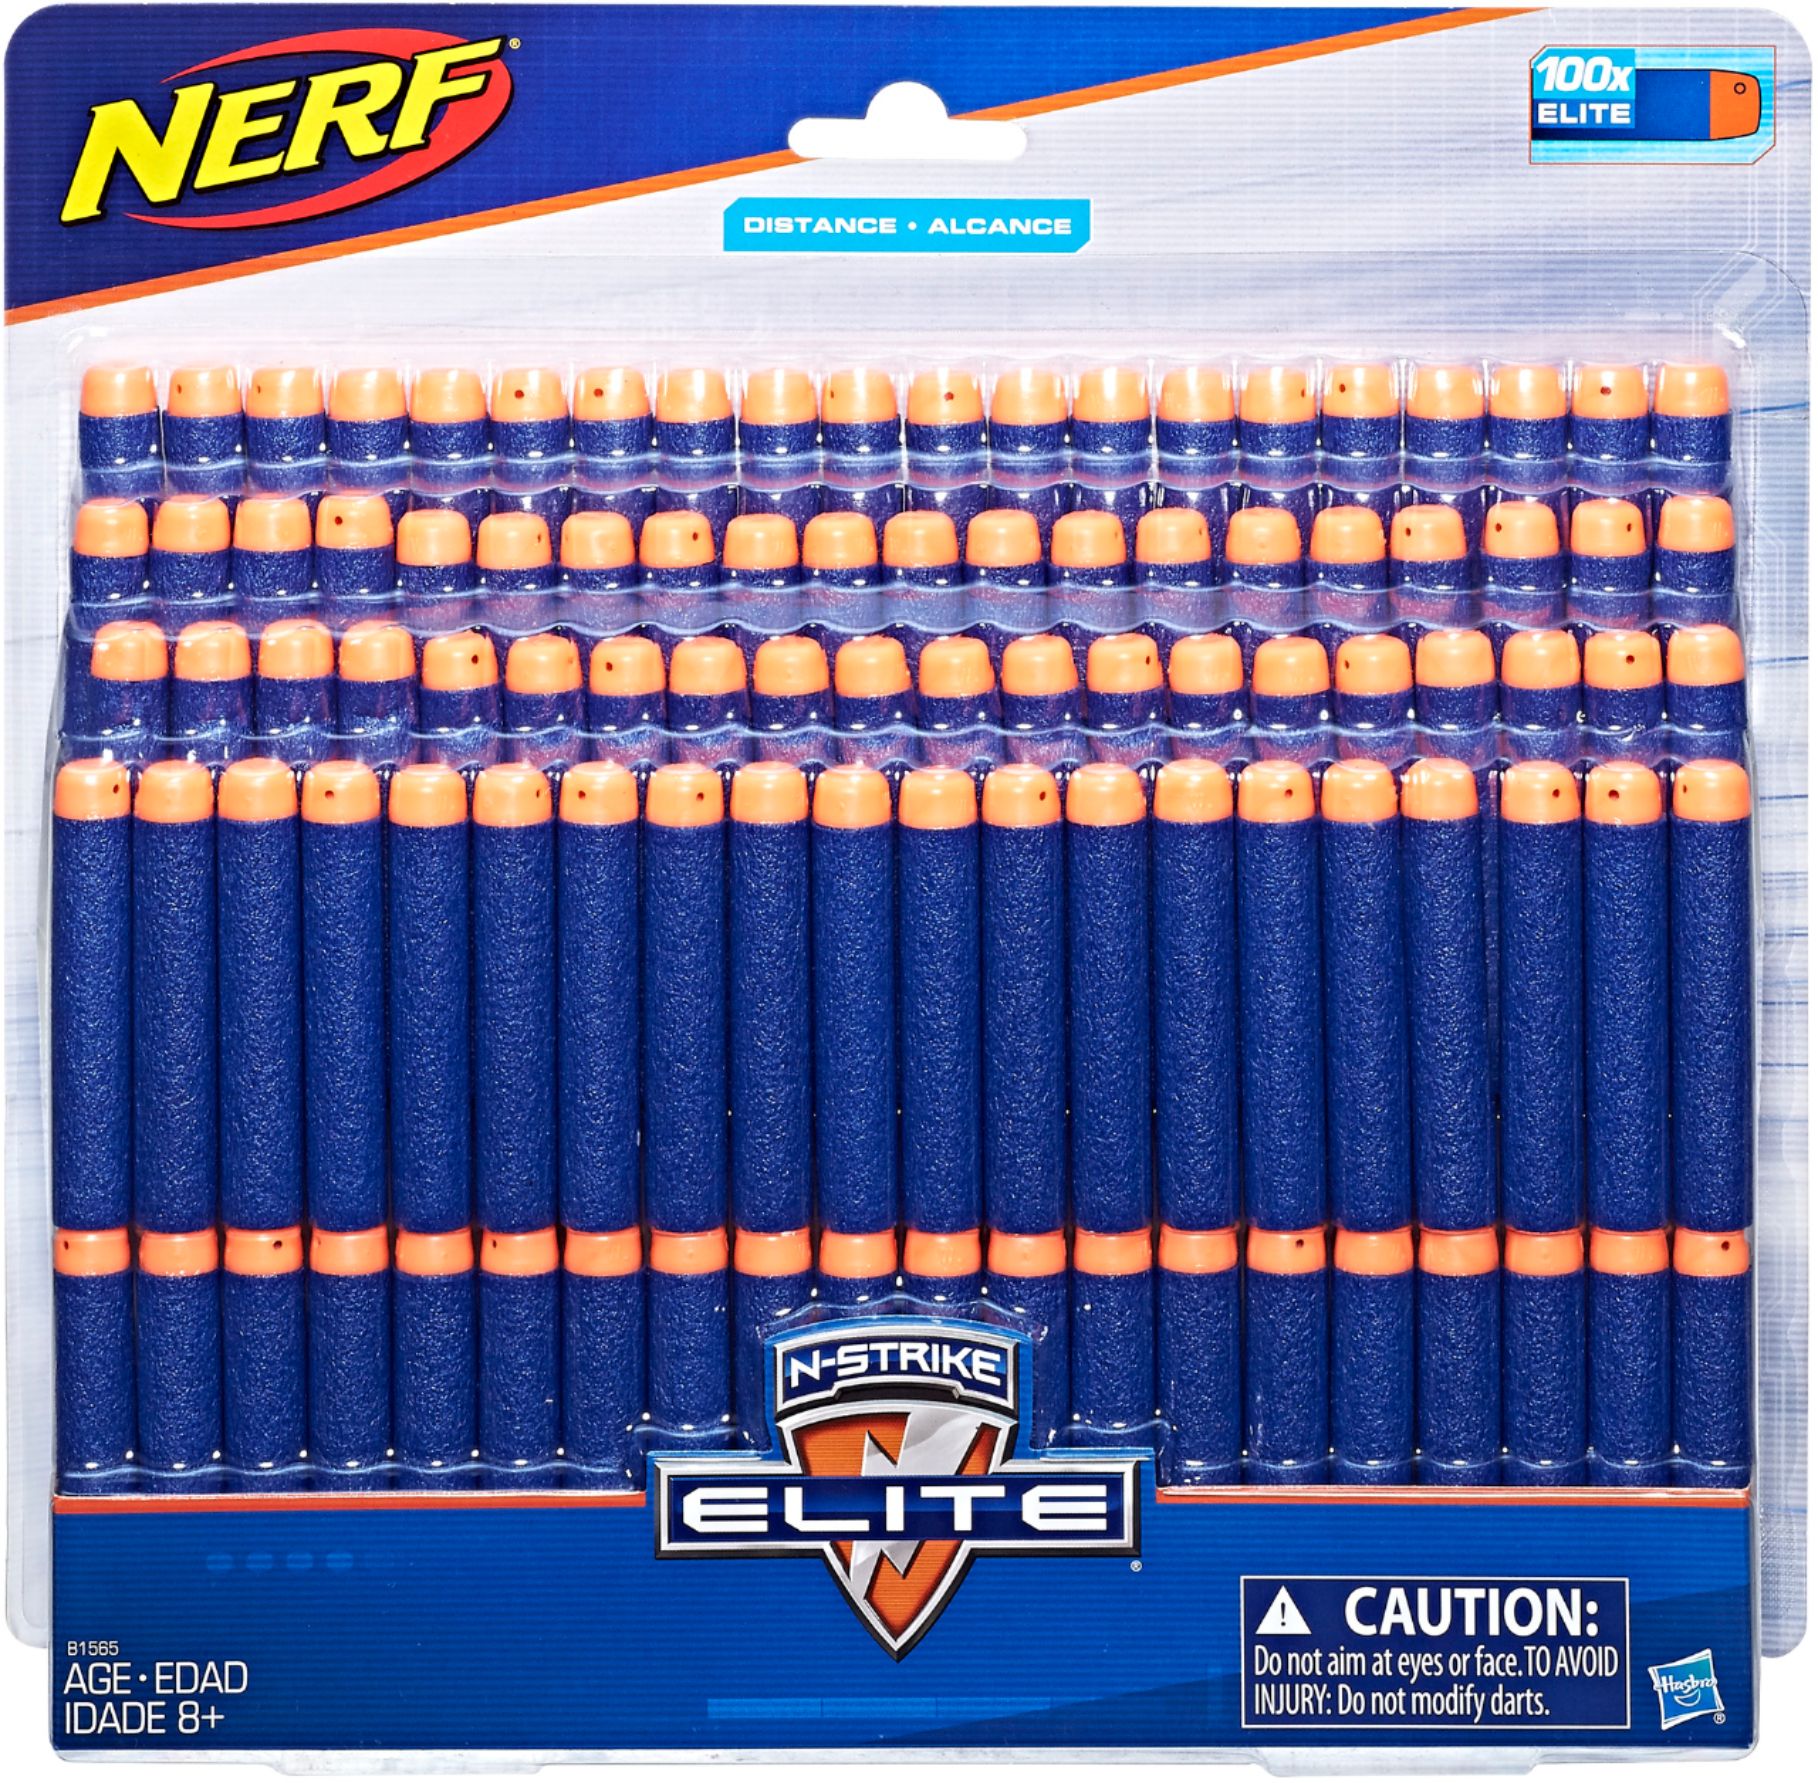 30 x Blue Bullets UK SELLER. Original NERF N-Strike Elite 30 Dart Refill Pack 